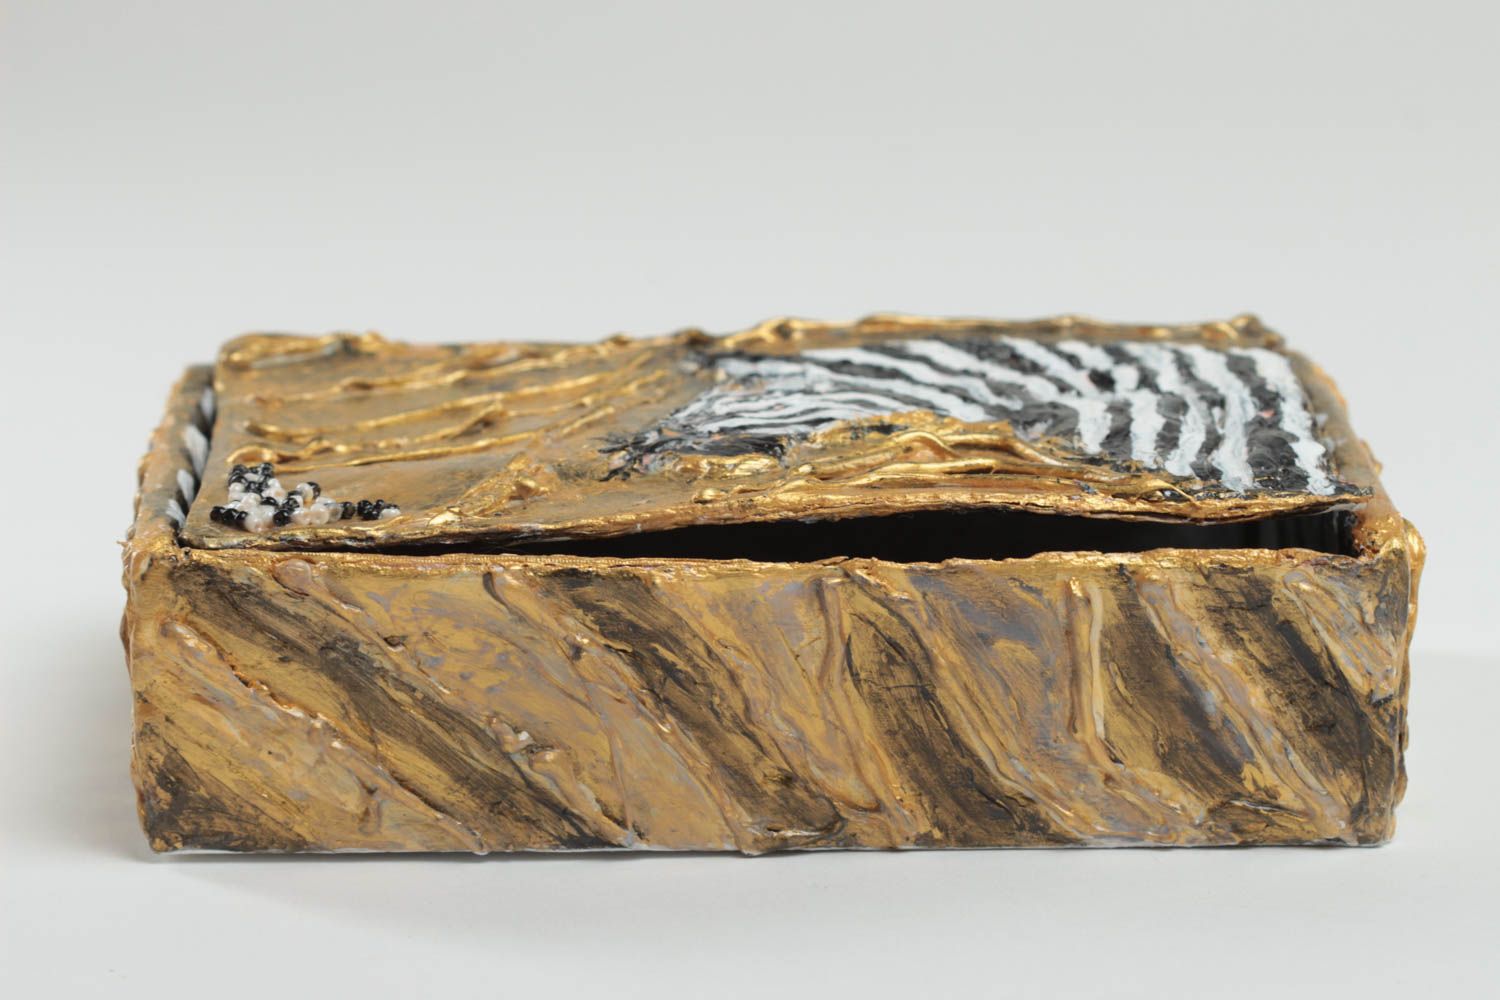 Шкатулка из самозастывающей глины ручной работы расписанная красками Зебра фото 4